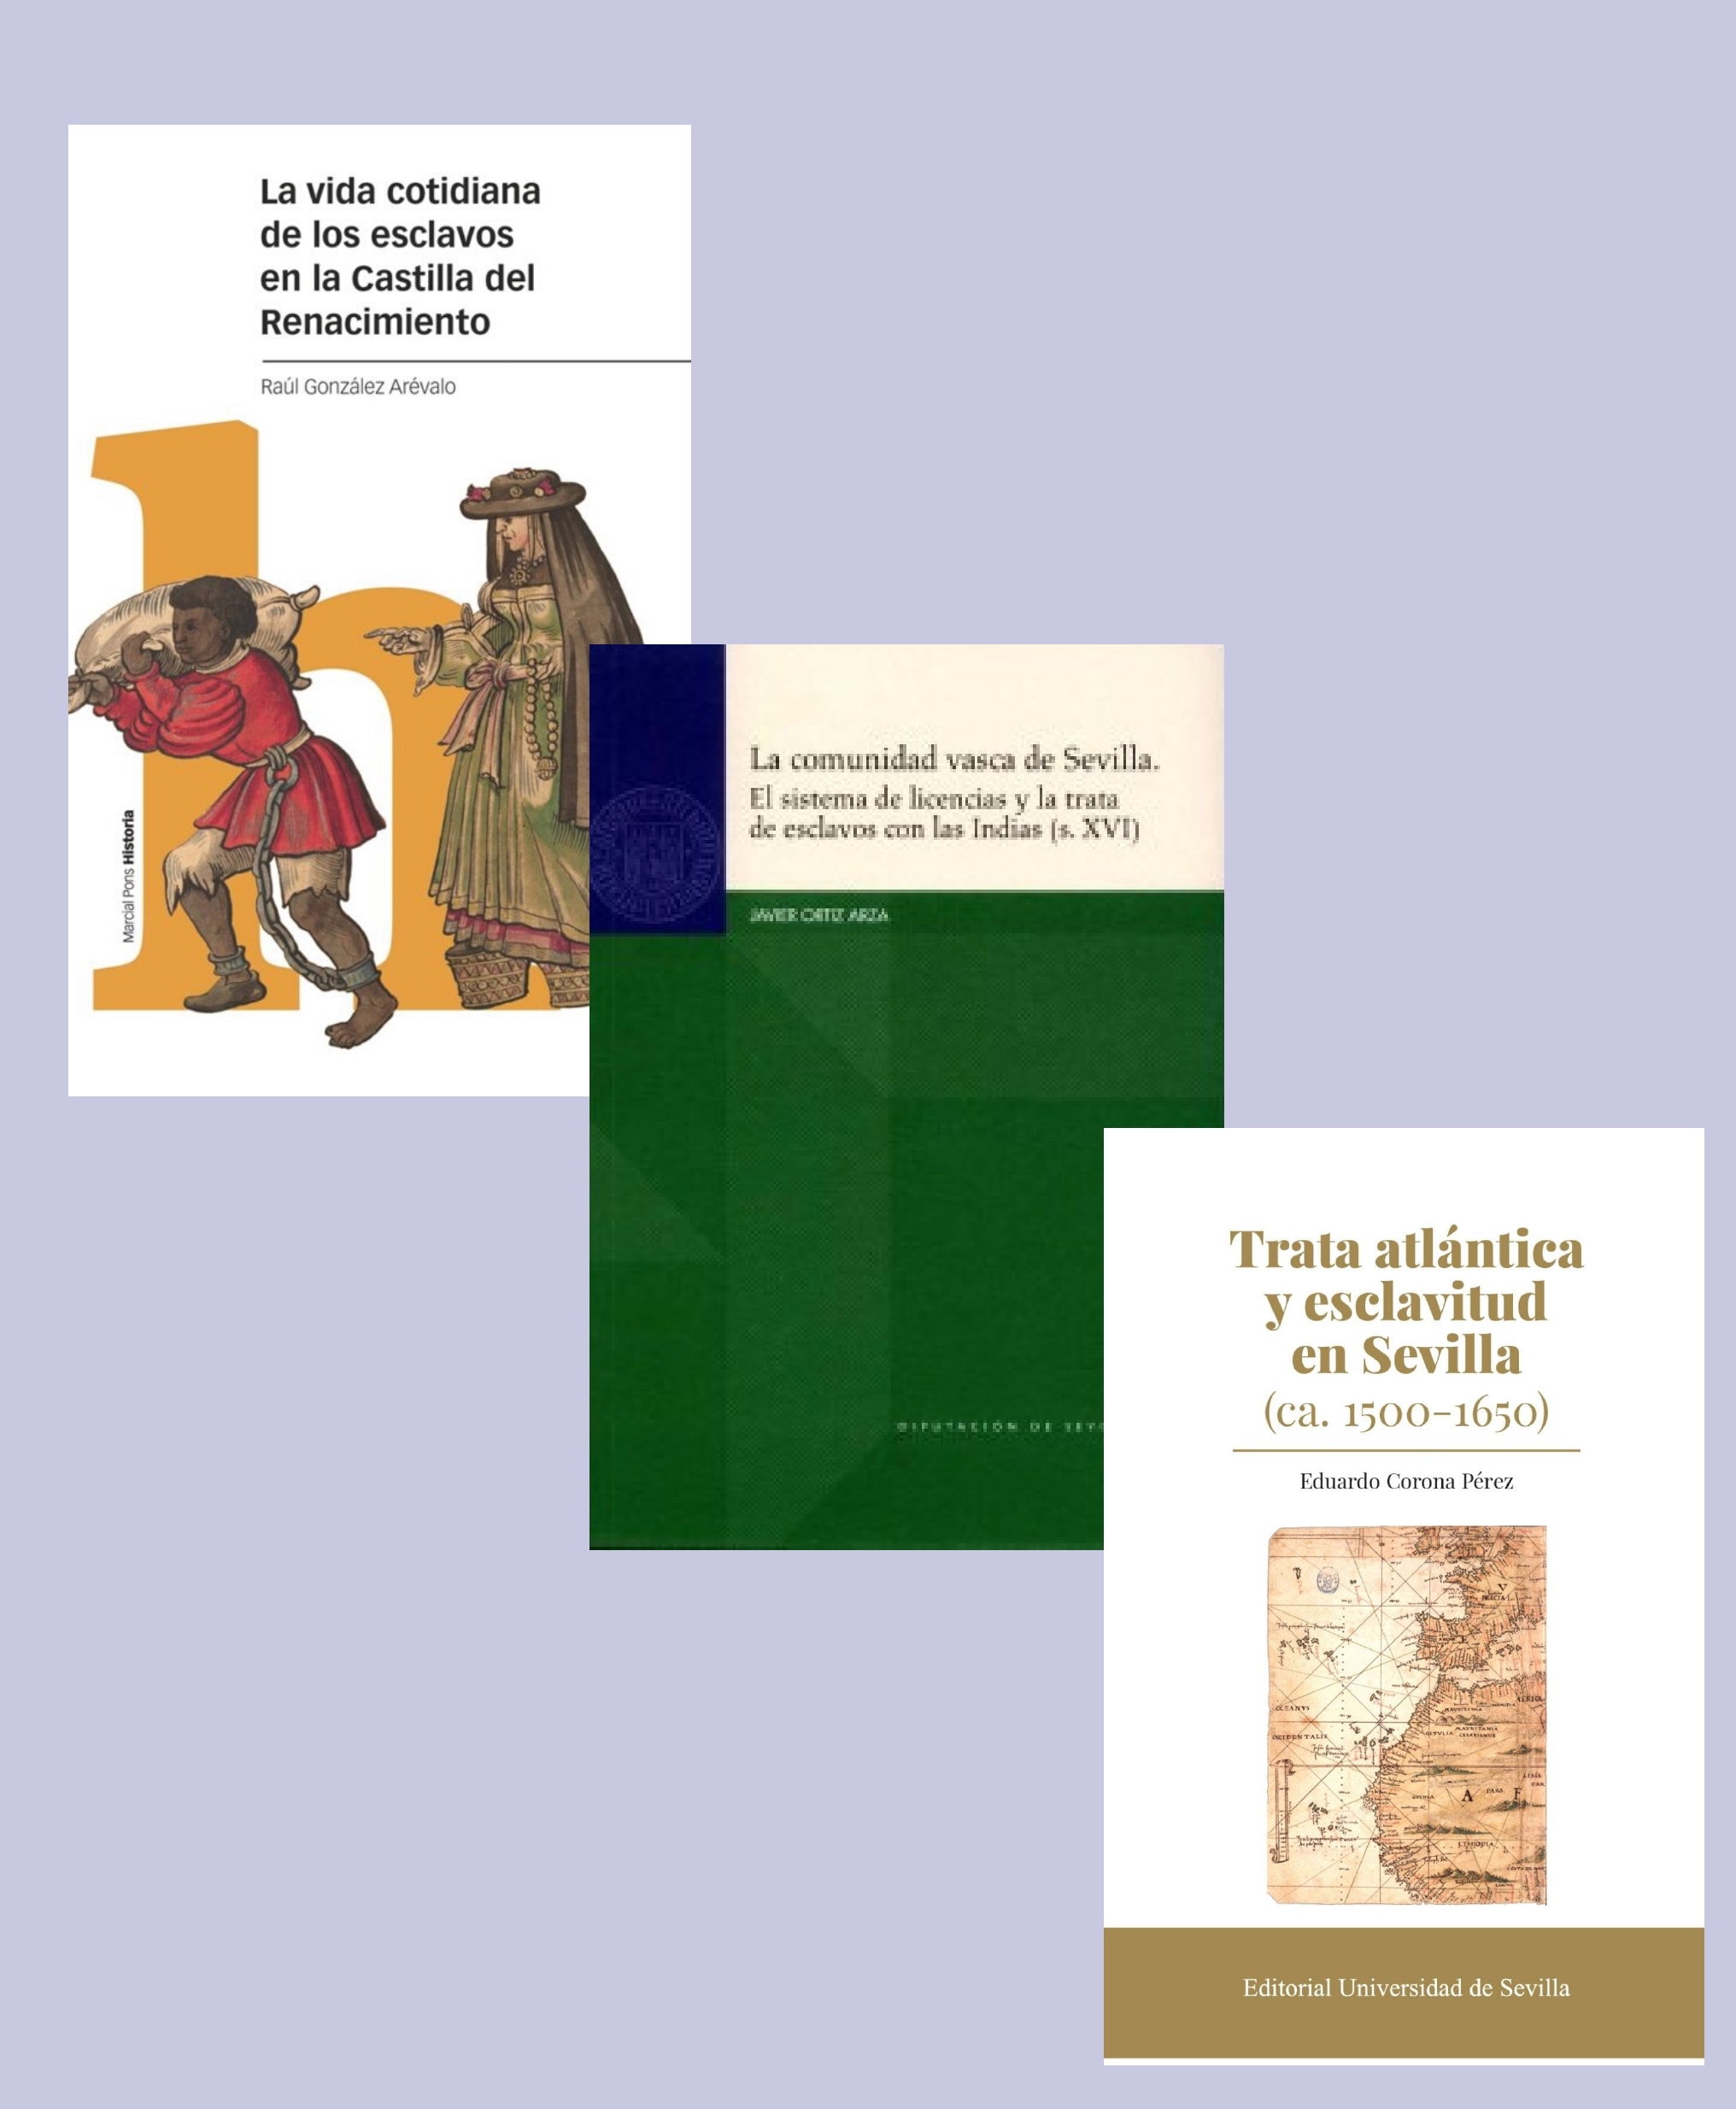 Presentación de libros  "HISTORIA DE LA ESCLAVITUD, SIGLOS XV-XVII"